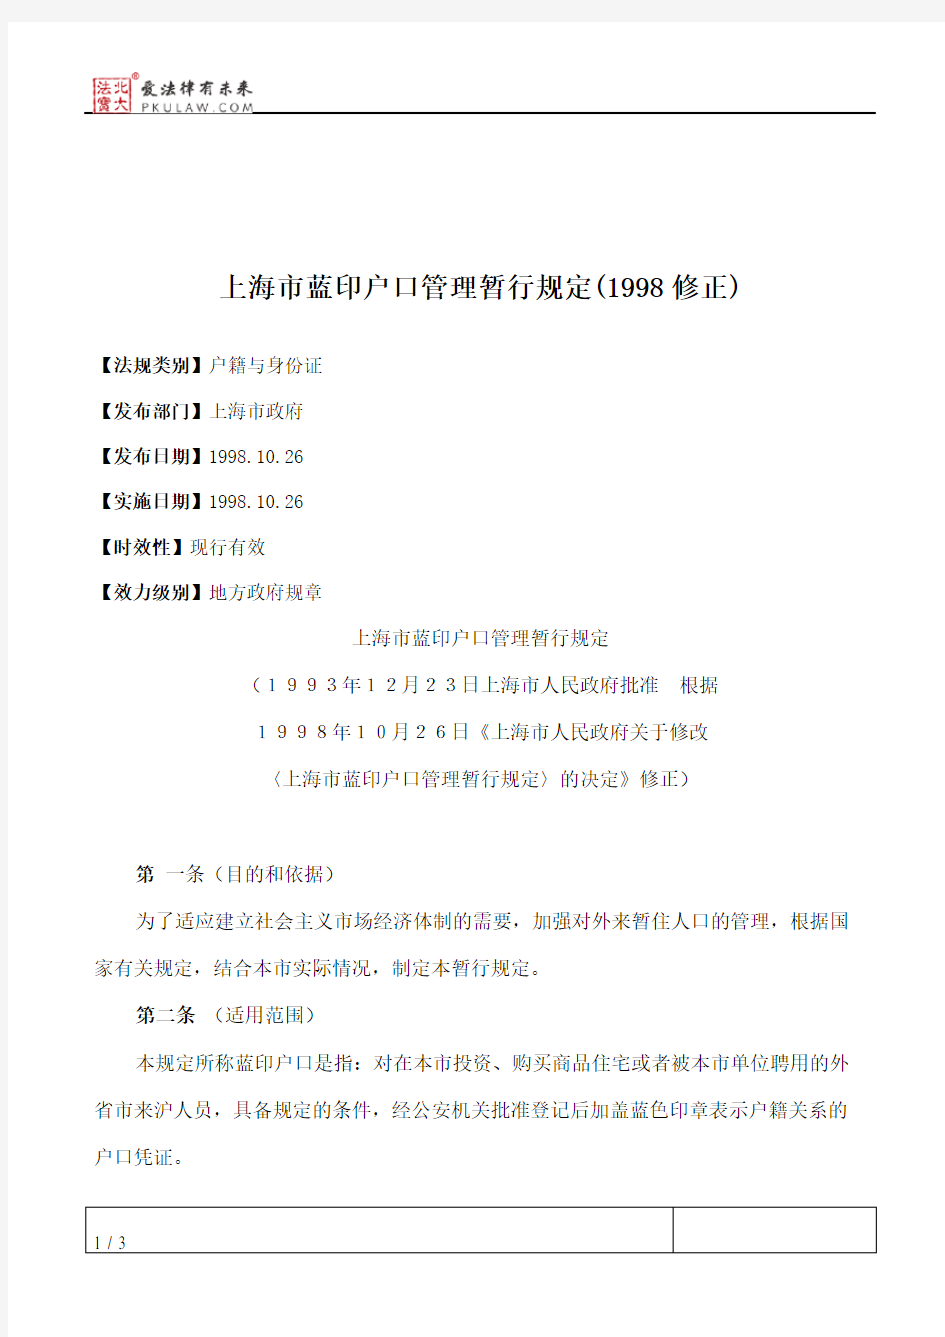 上海市蓝印户口管理暂行规定(1998修正)